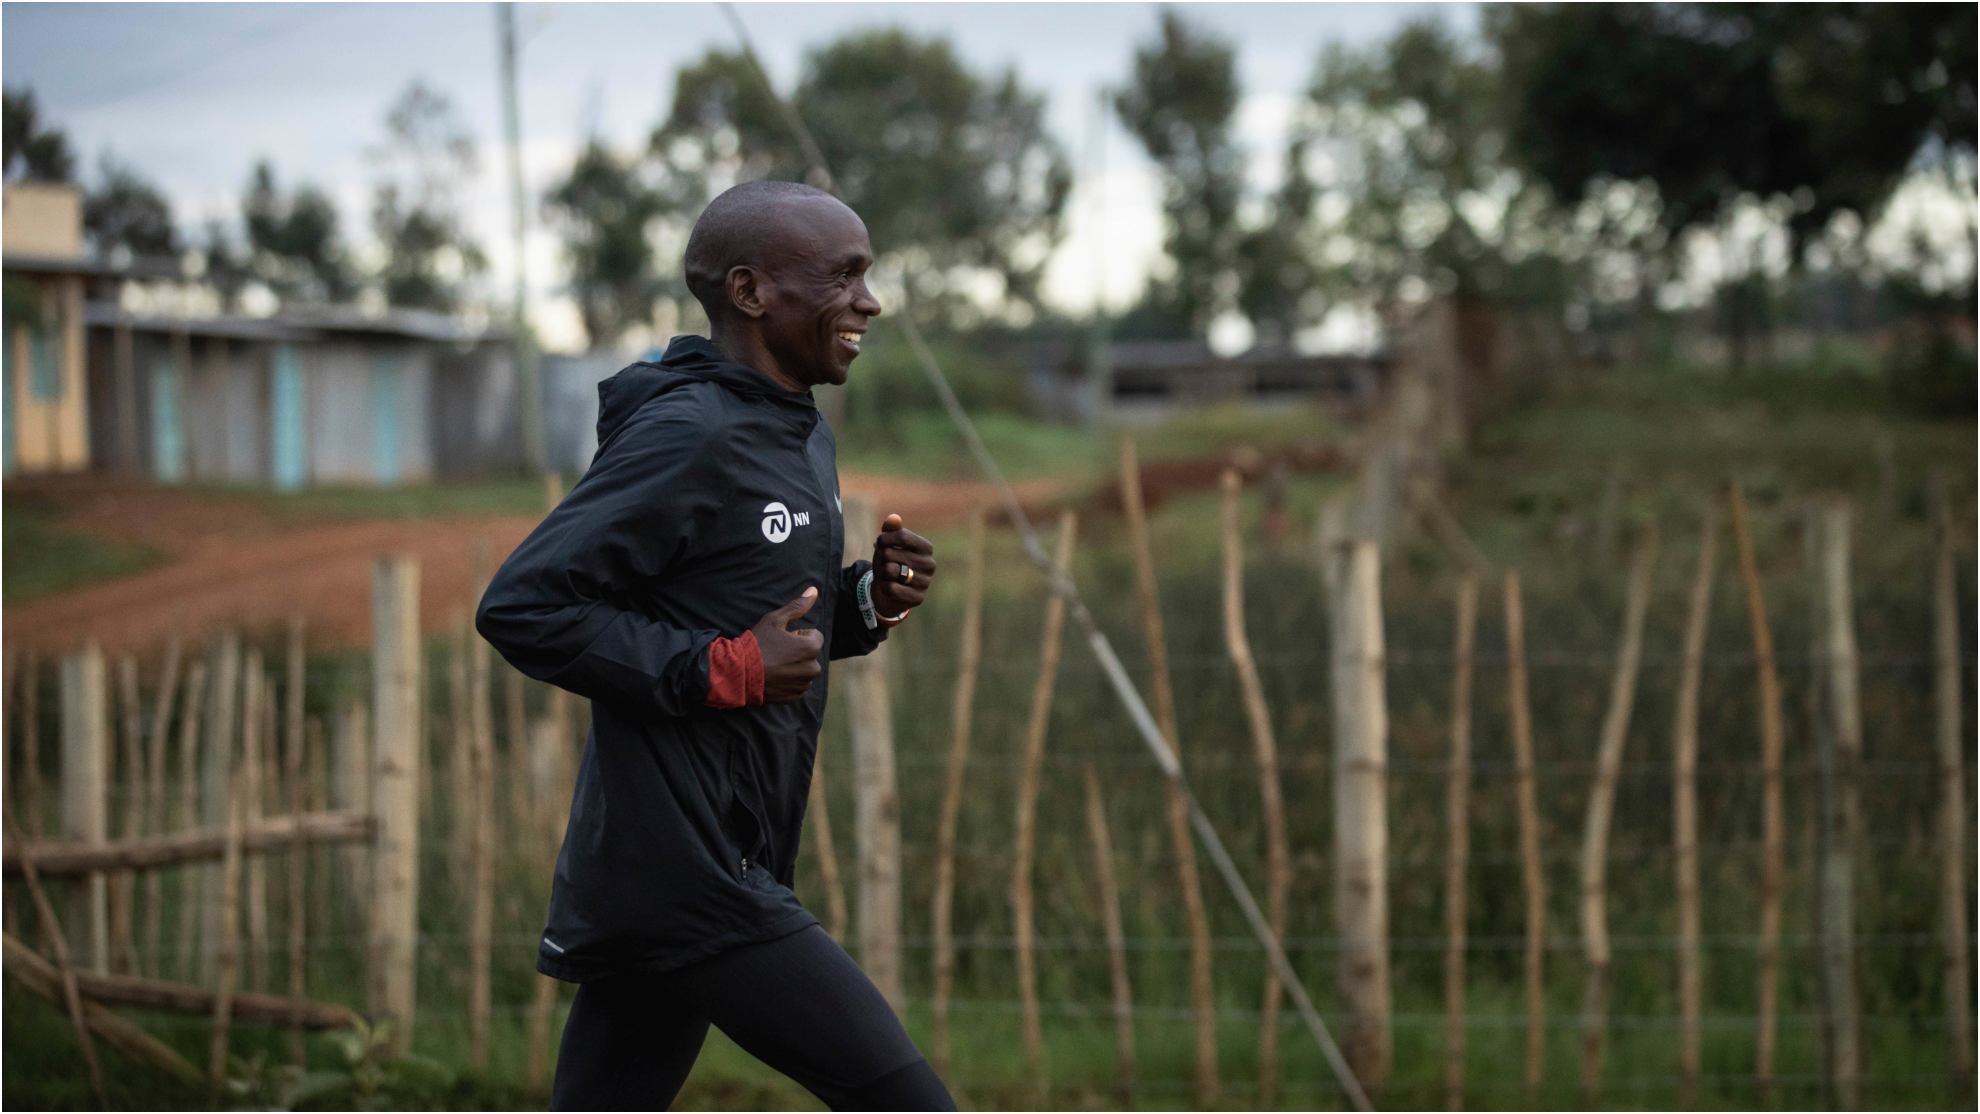 Kipchoge: El 80% de los atletas en Kenia beben alcohol, queda mucho por hacer